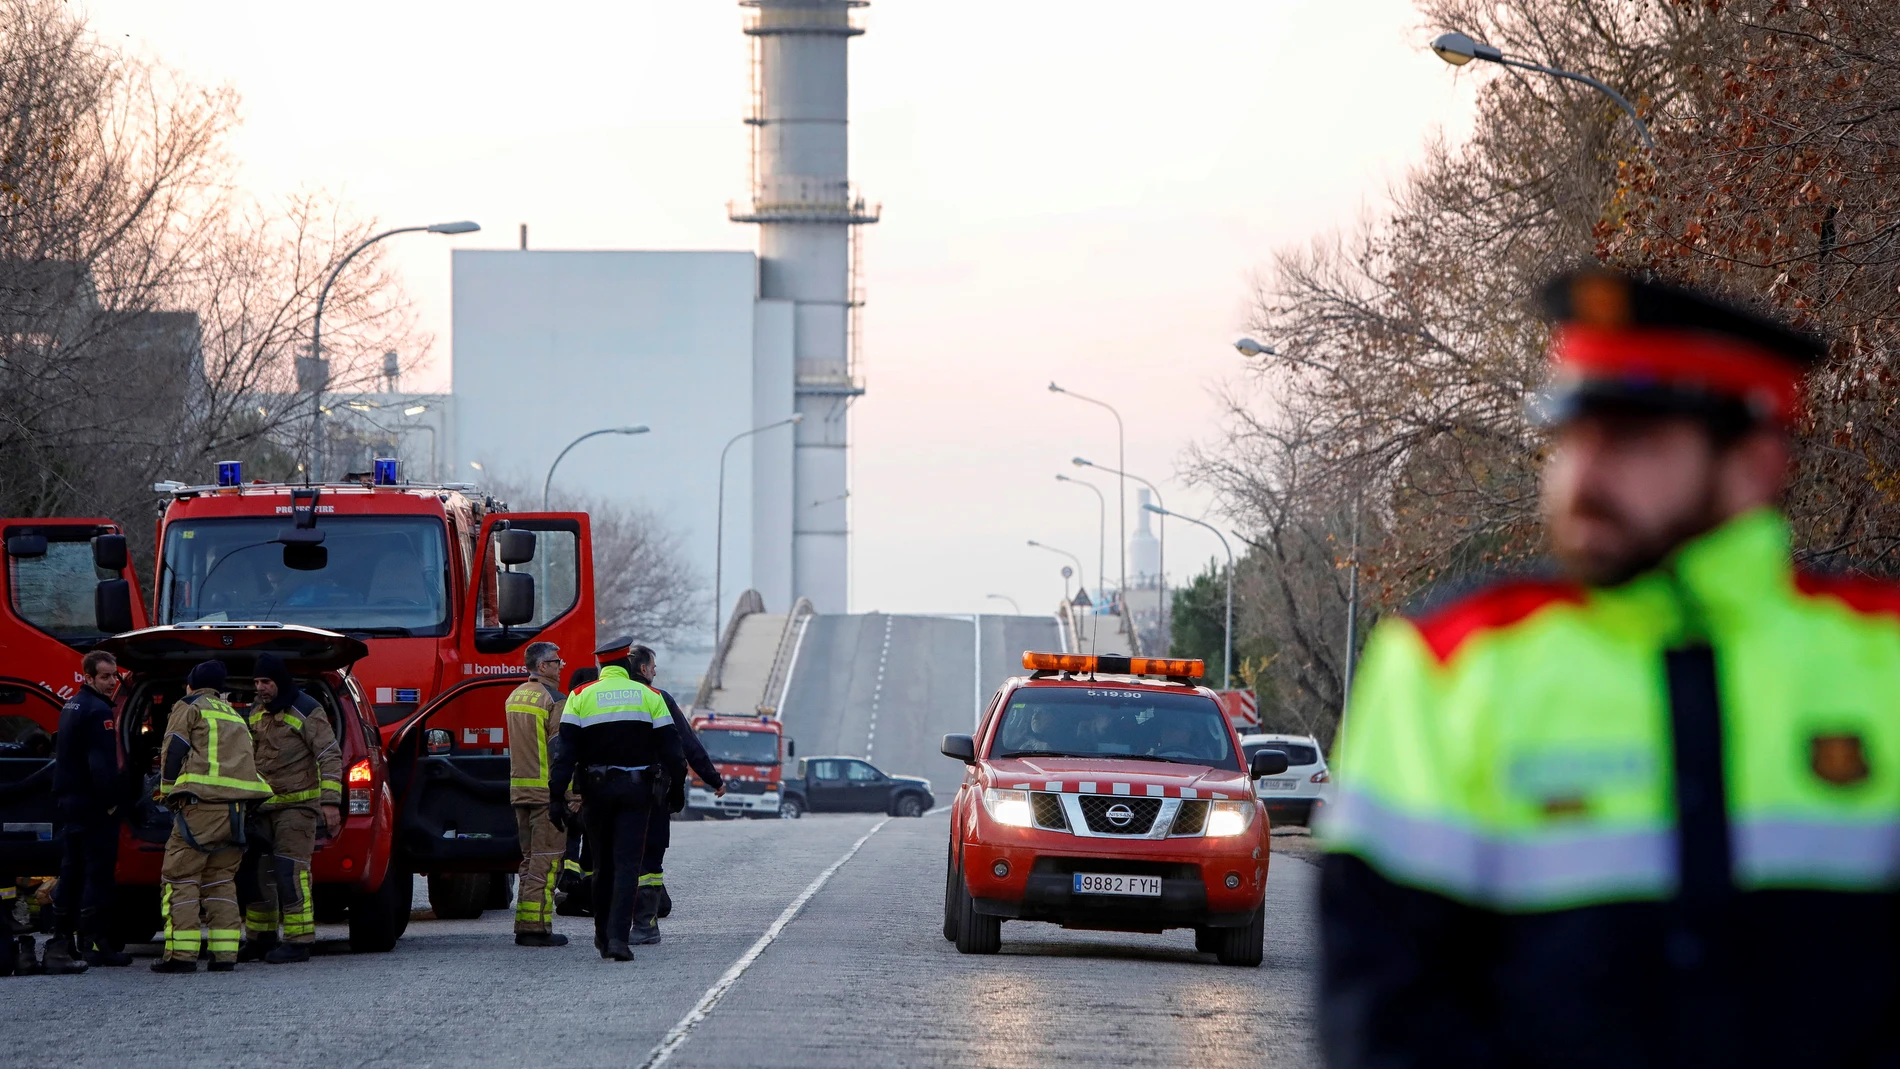 Los servicios de emergencia trabajan en la planta petroquímica de Tarragona tras la grave explosión